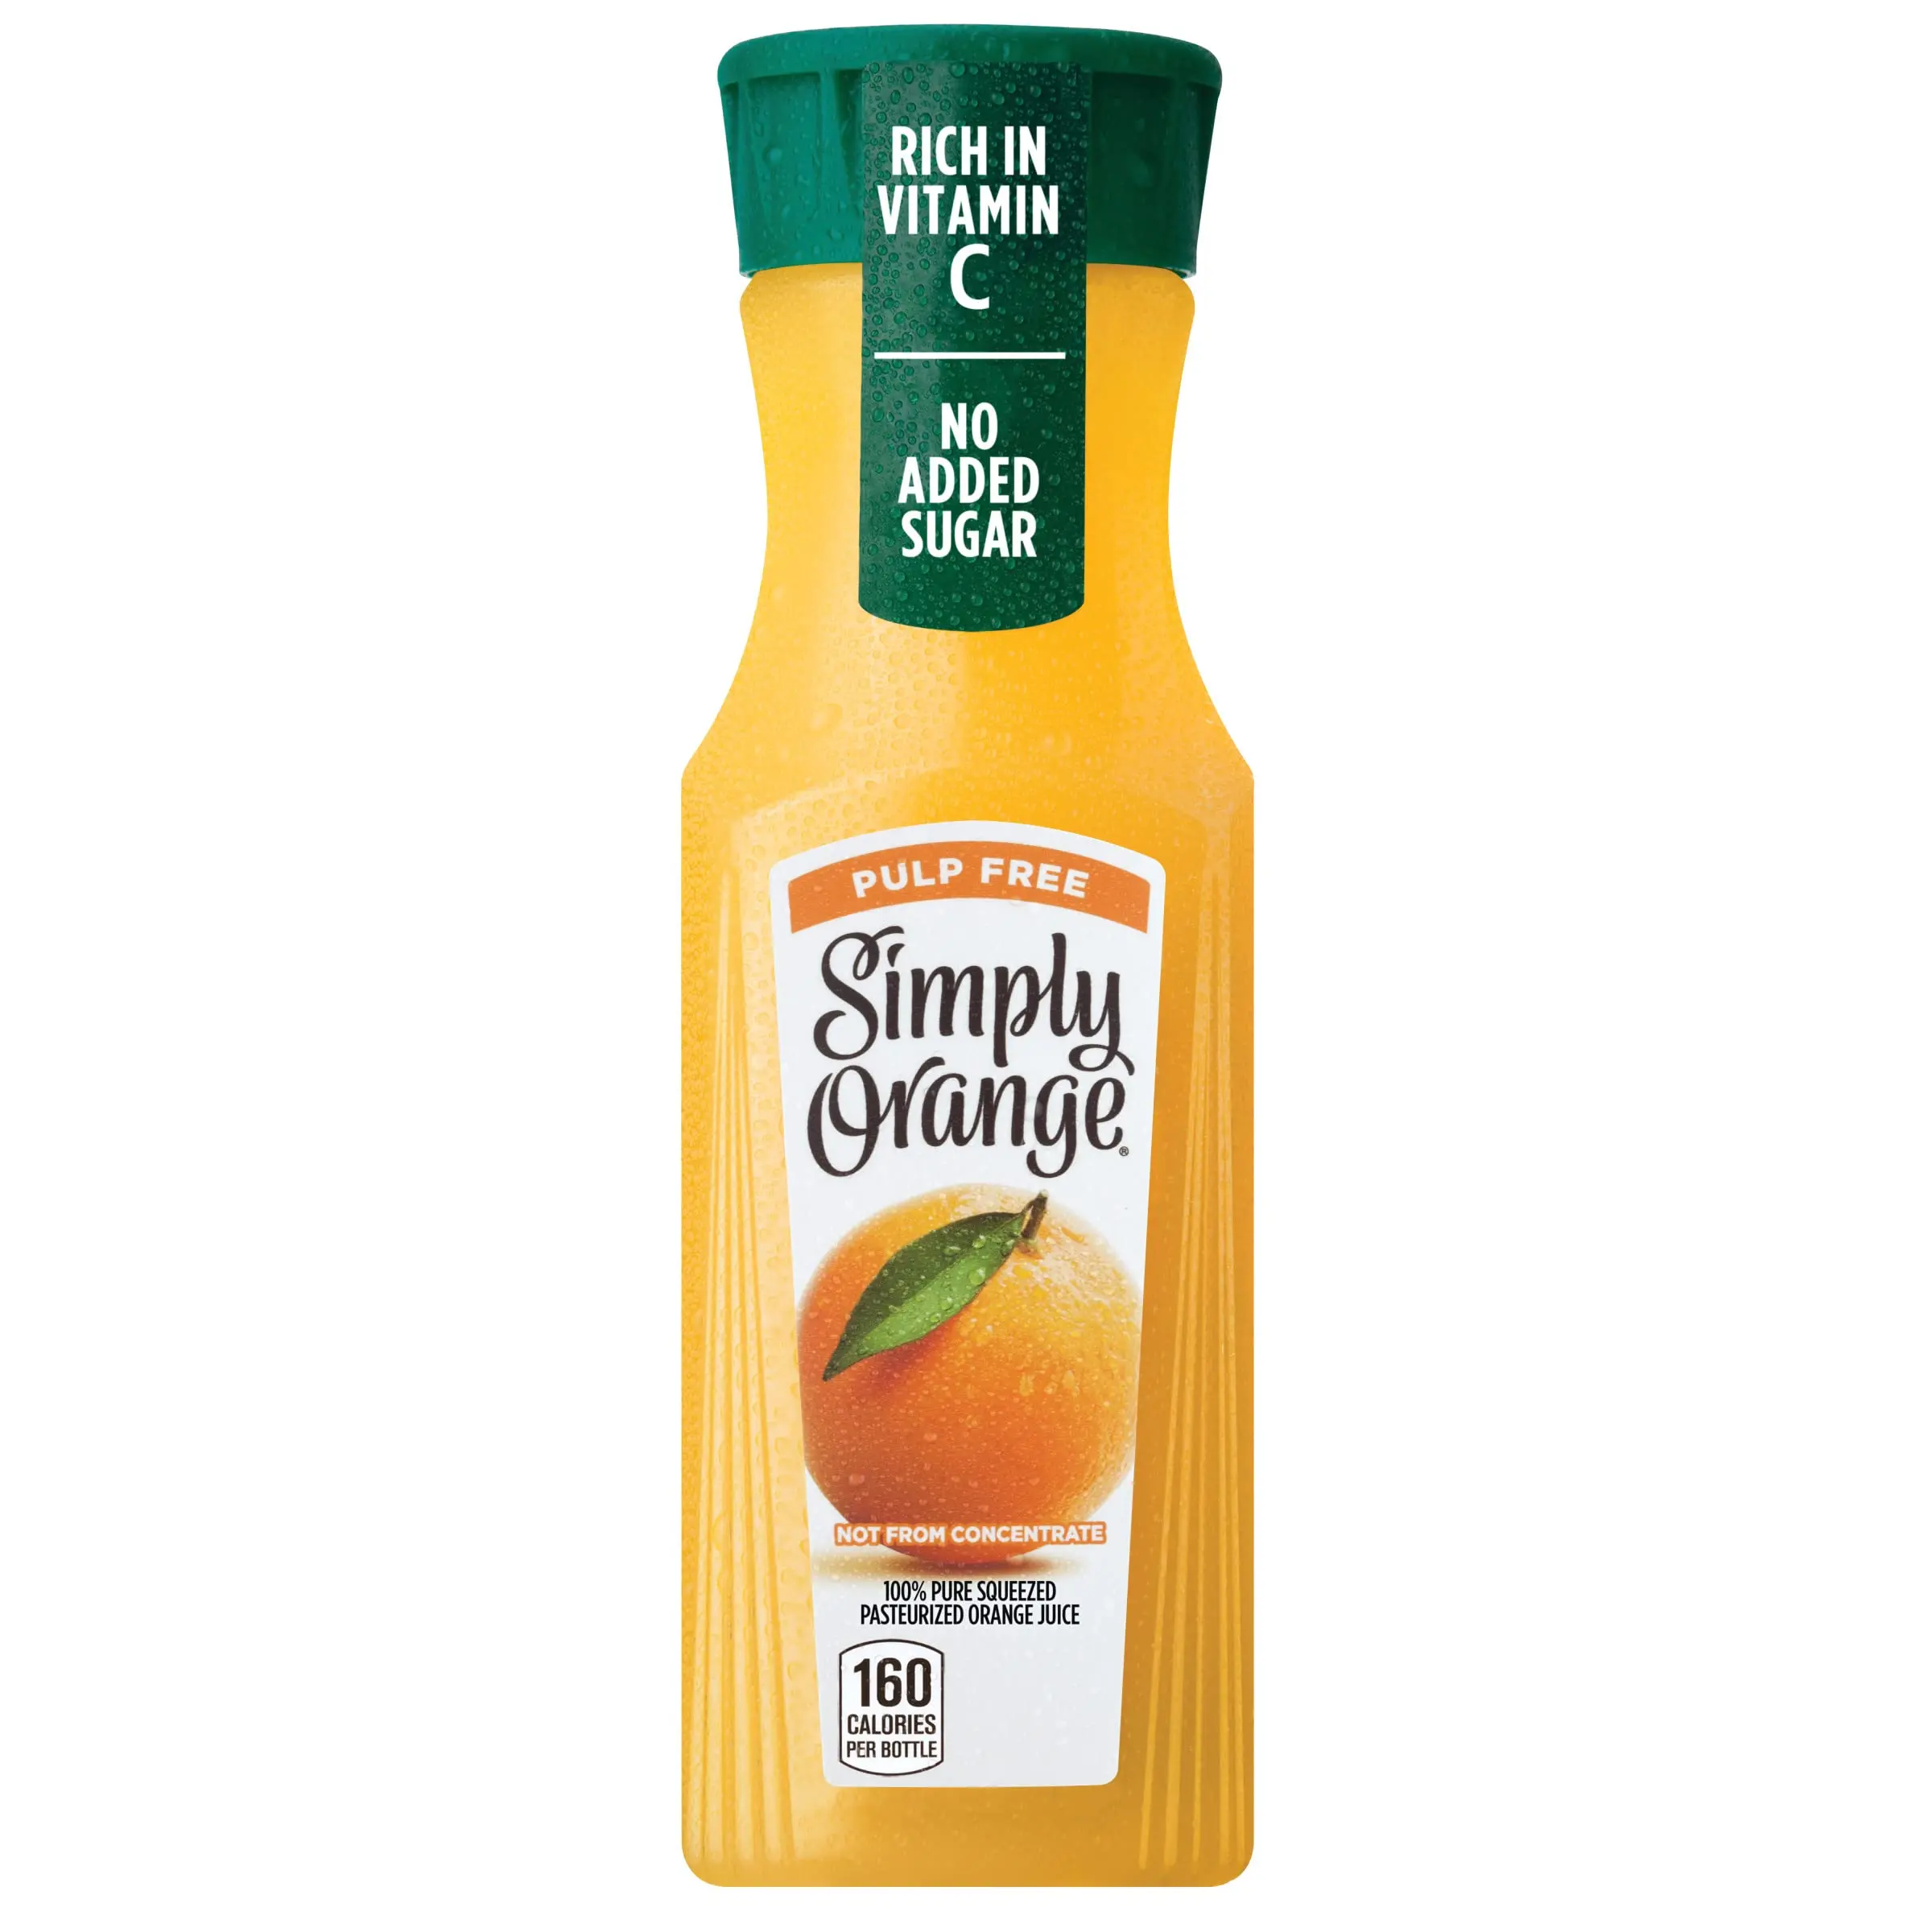 jugo simply orange - Qué contiene el jugo Simply Orange